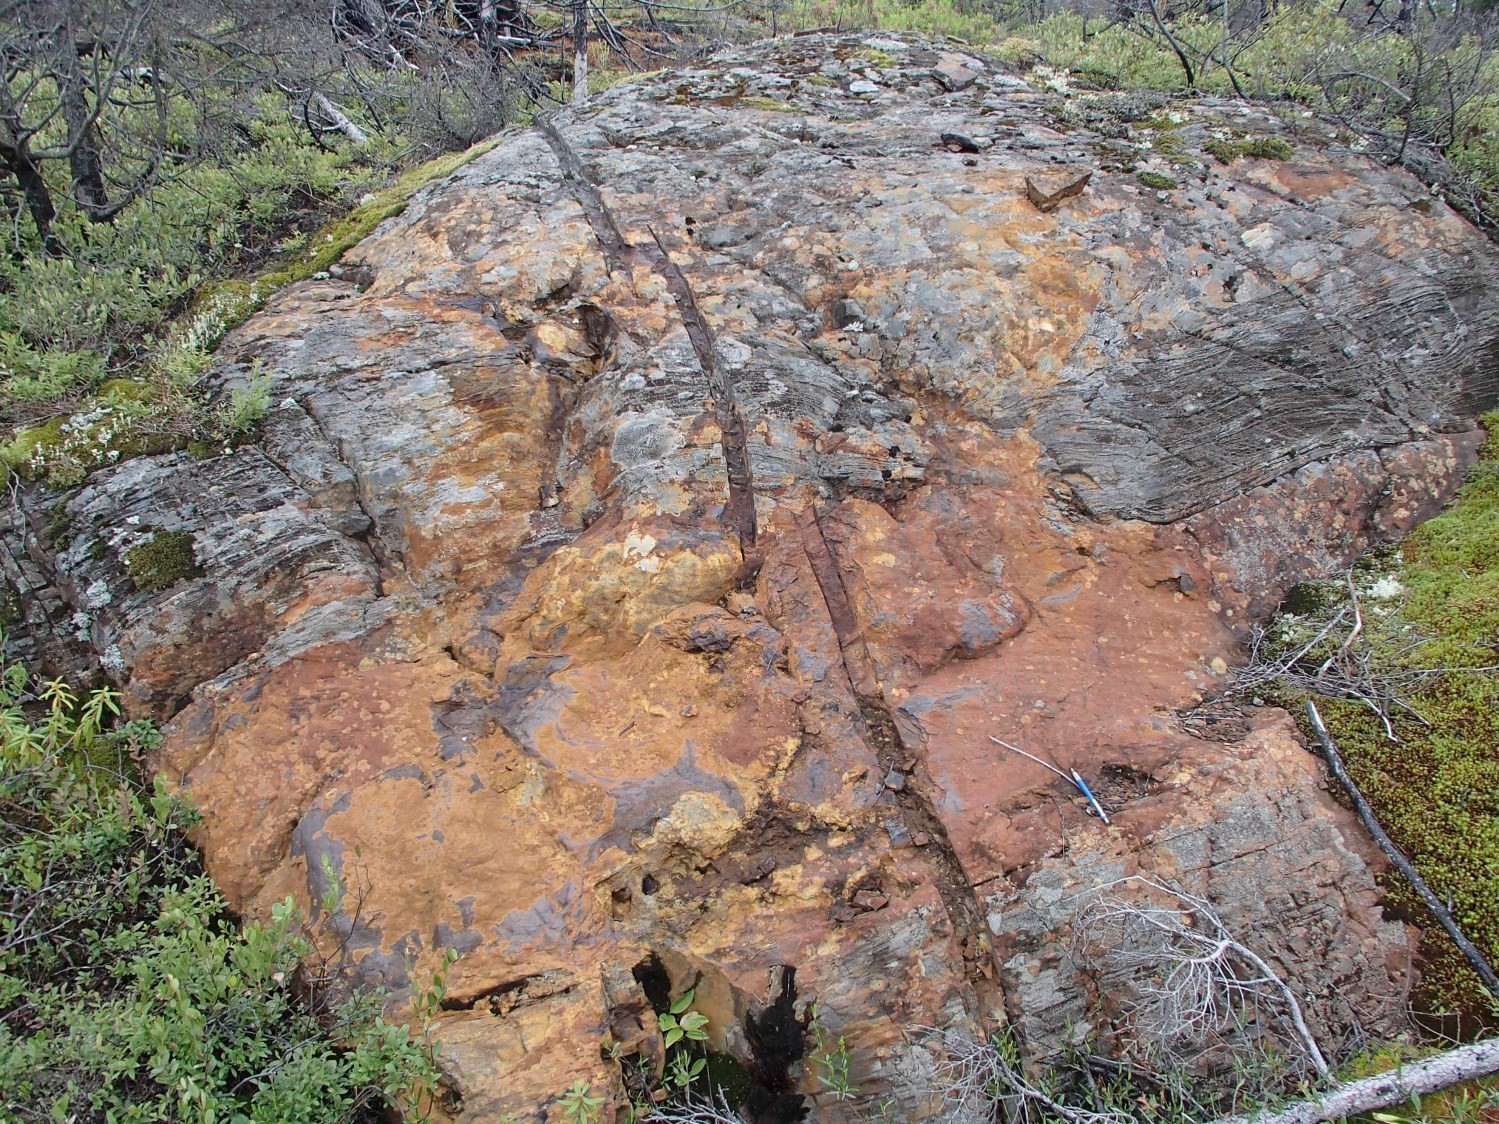 Indice Lac Marcaut. Lentille de sulfures semi-massifs dans des basaltes du Groupe de Colomb-Chaboullié (nAcch1). Affleurement 15-SB-4140.